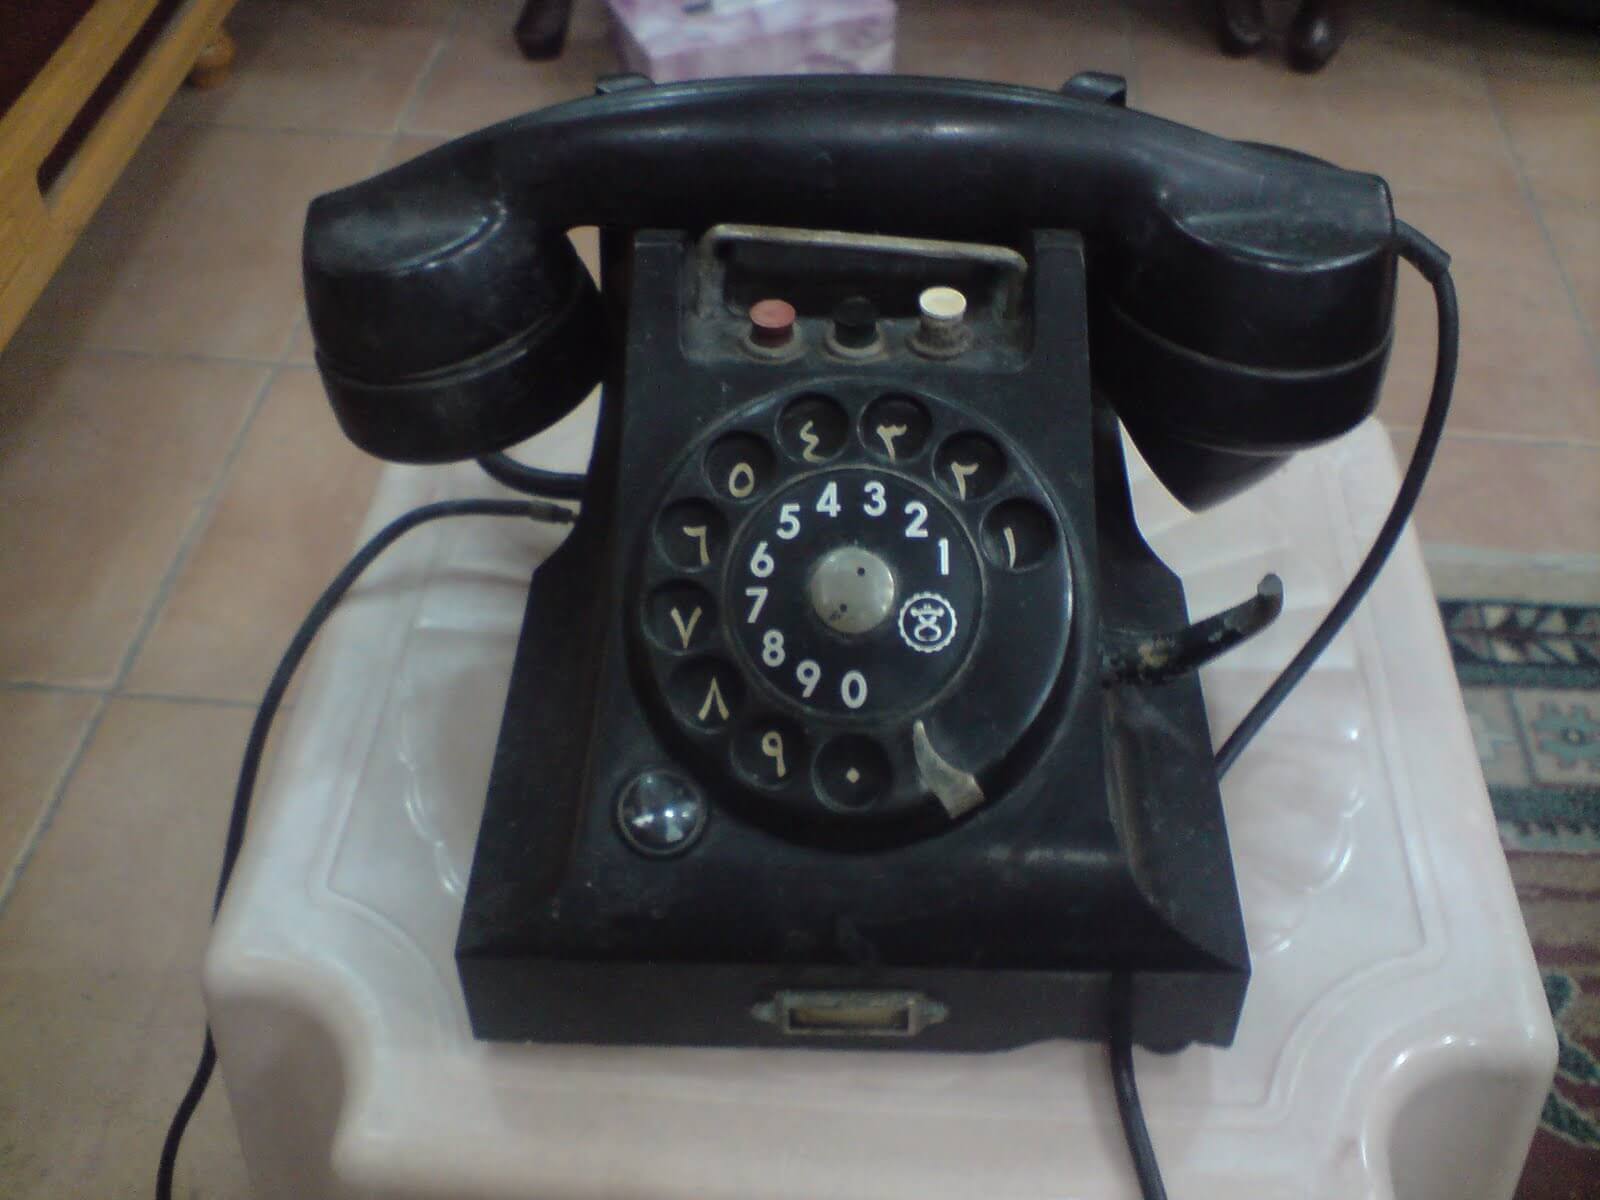 كيف كان شكل باسورد الهاتف الأرضي قديما